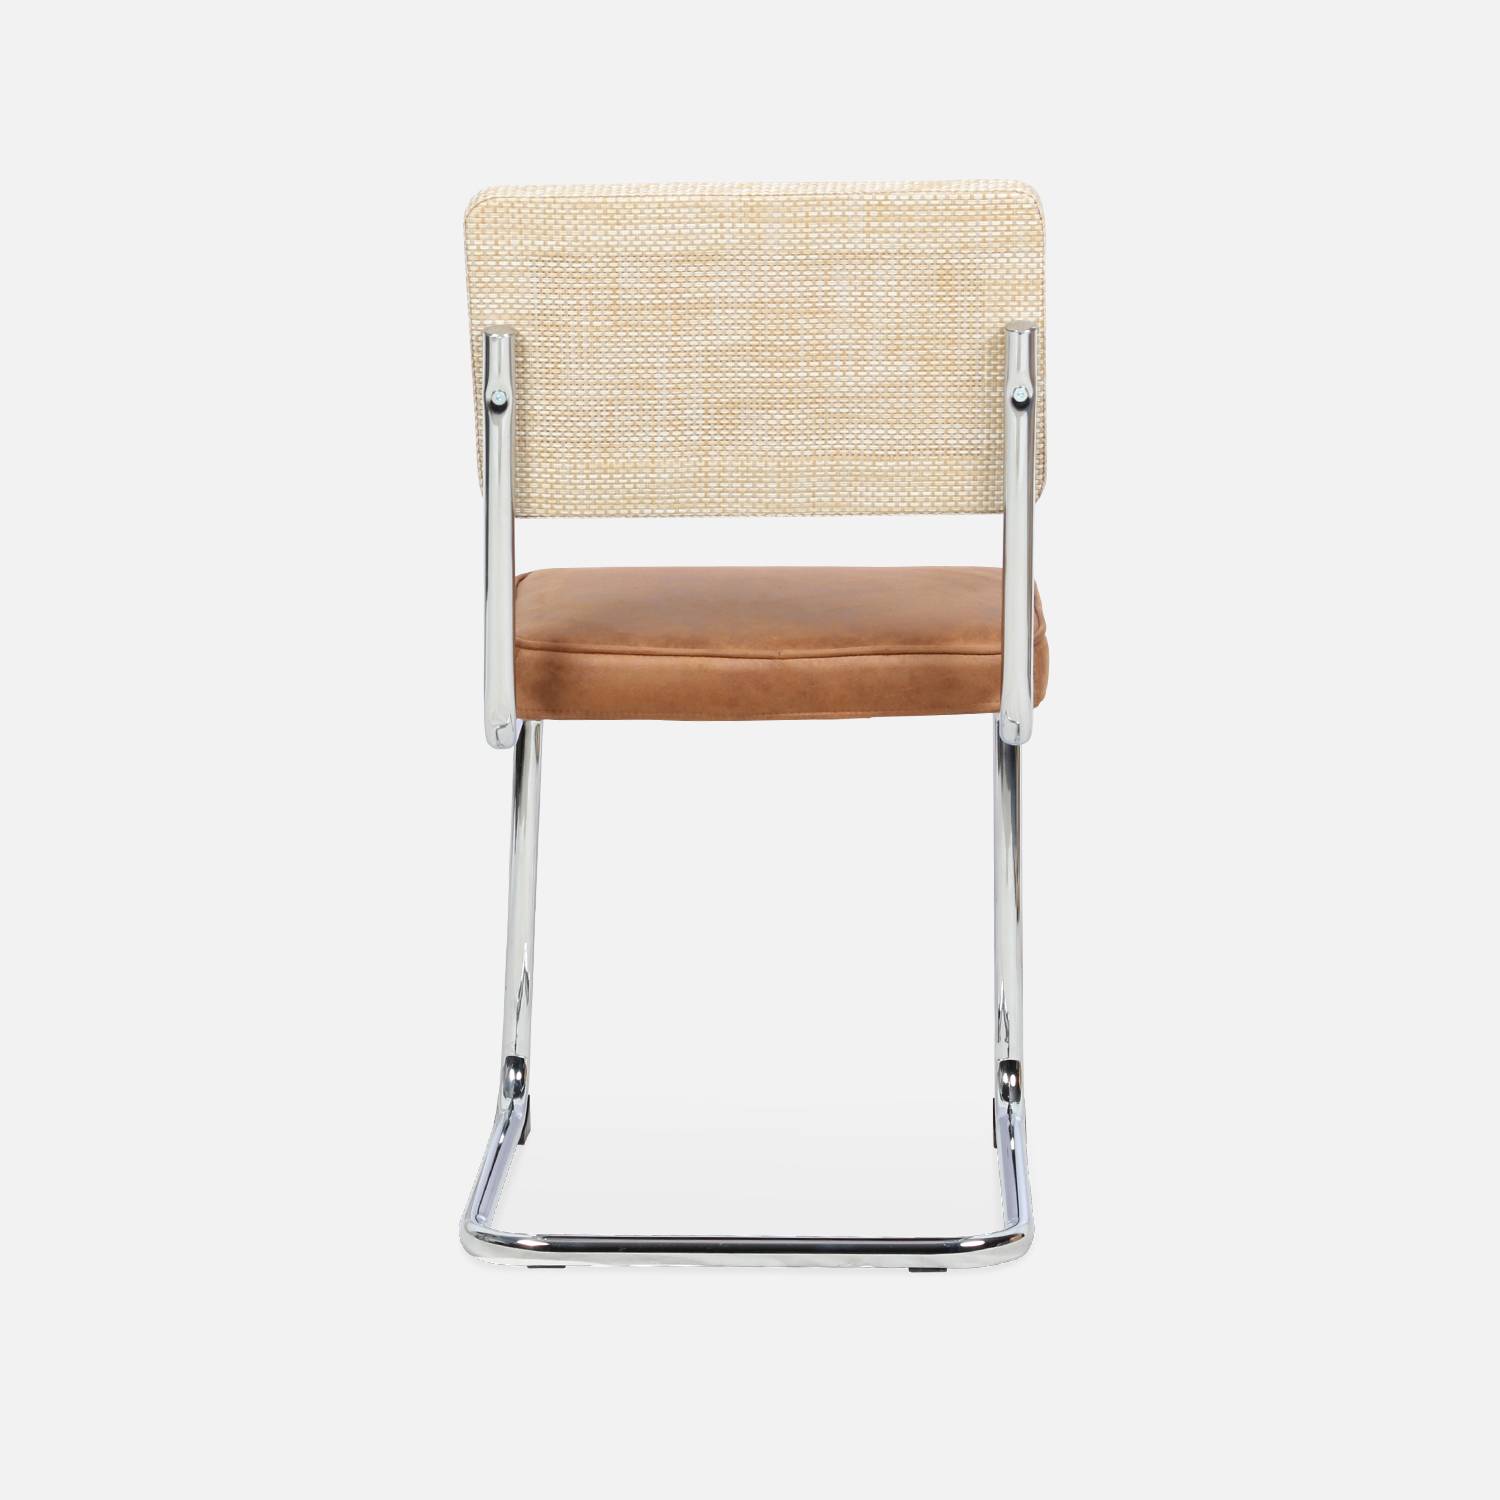 2 cadeiras cantilever - Maja - tecido castanho claro e resina com efeito rattan, 46 x 54,5 x 84,5 cm Photo9